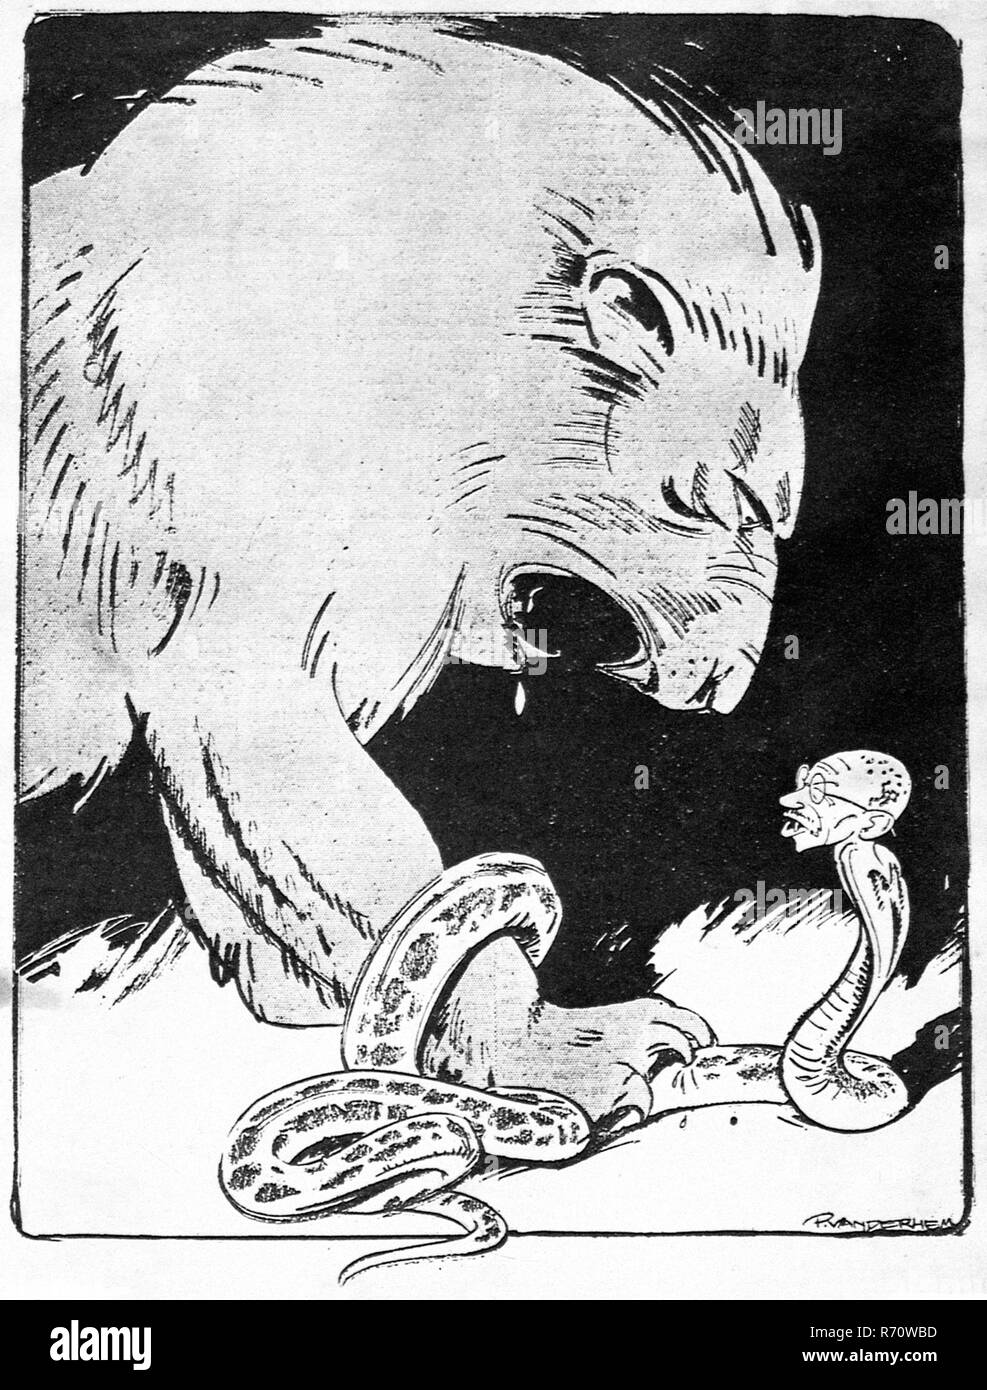 Caricature le Mahatma Gandhi , le lion britannique montre ses dents, Haagesche Post, La Haye, Pays-Bas, 1930 Banque D'Images